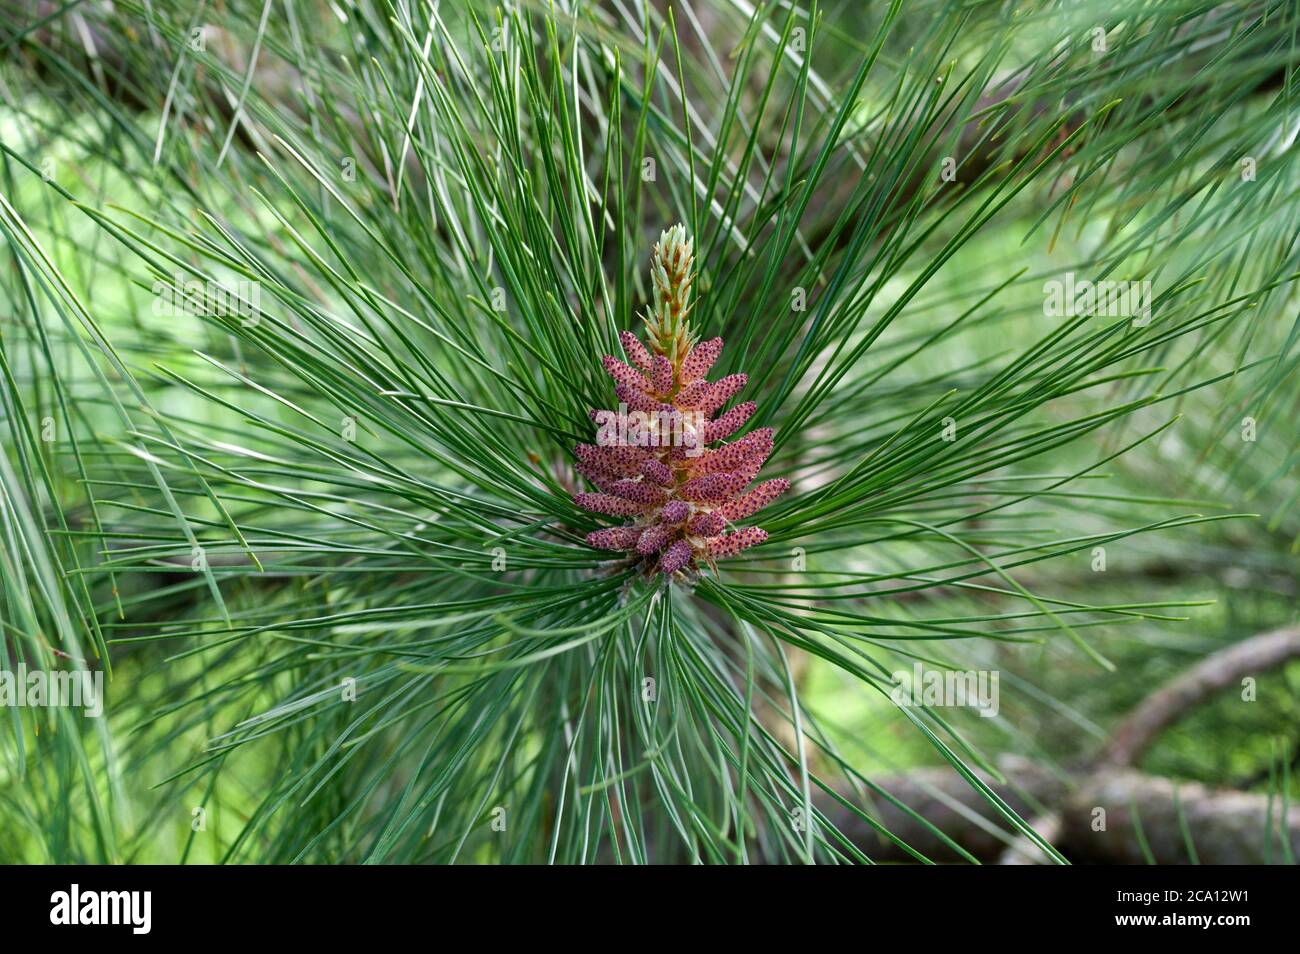 Fleur mâle de pin rouge, Pinus resinosa, composée de cônes polliniques formés à la base de la nouvelle tige. Banque D'Images